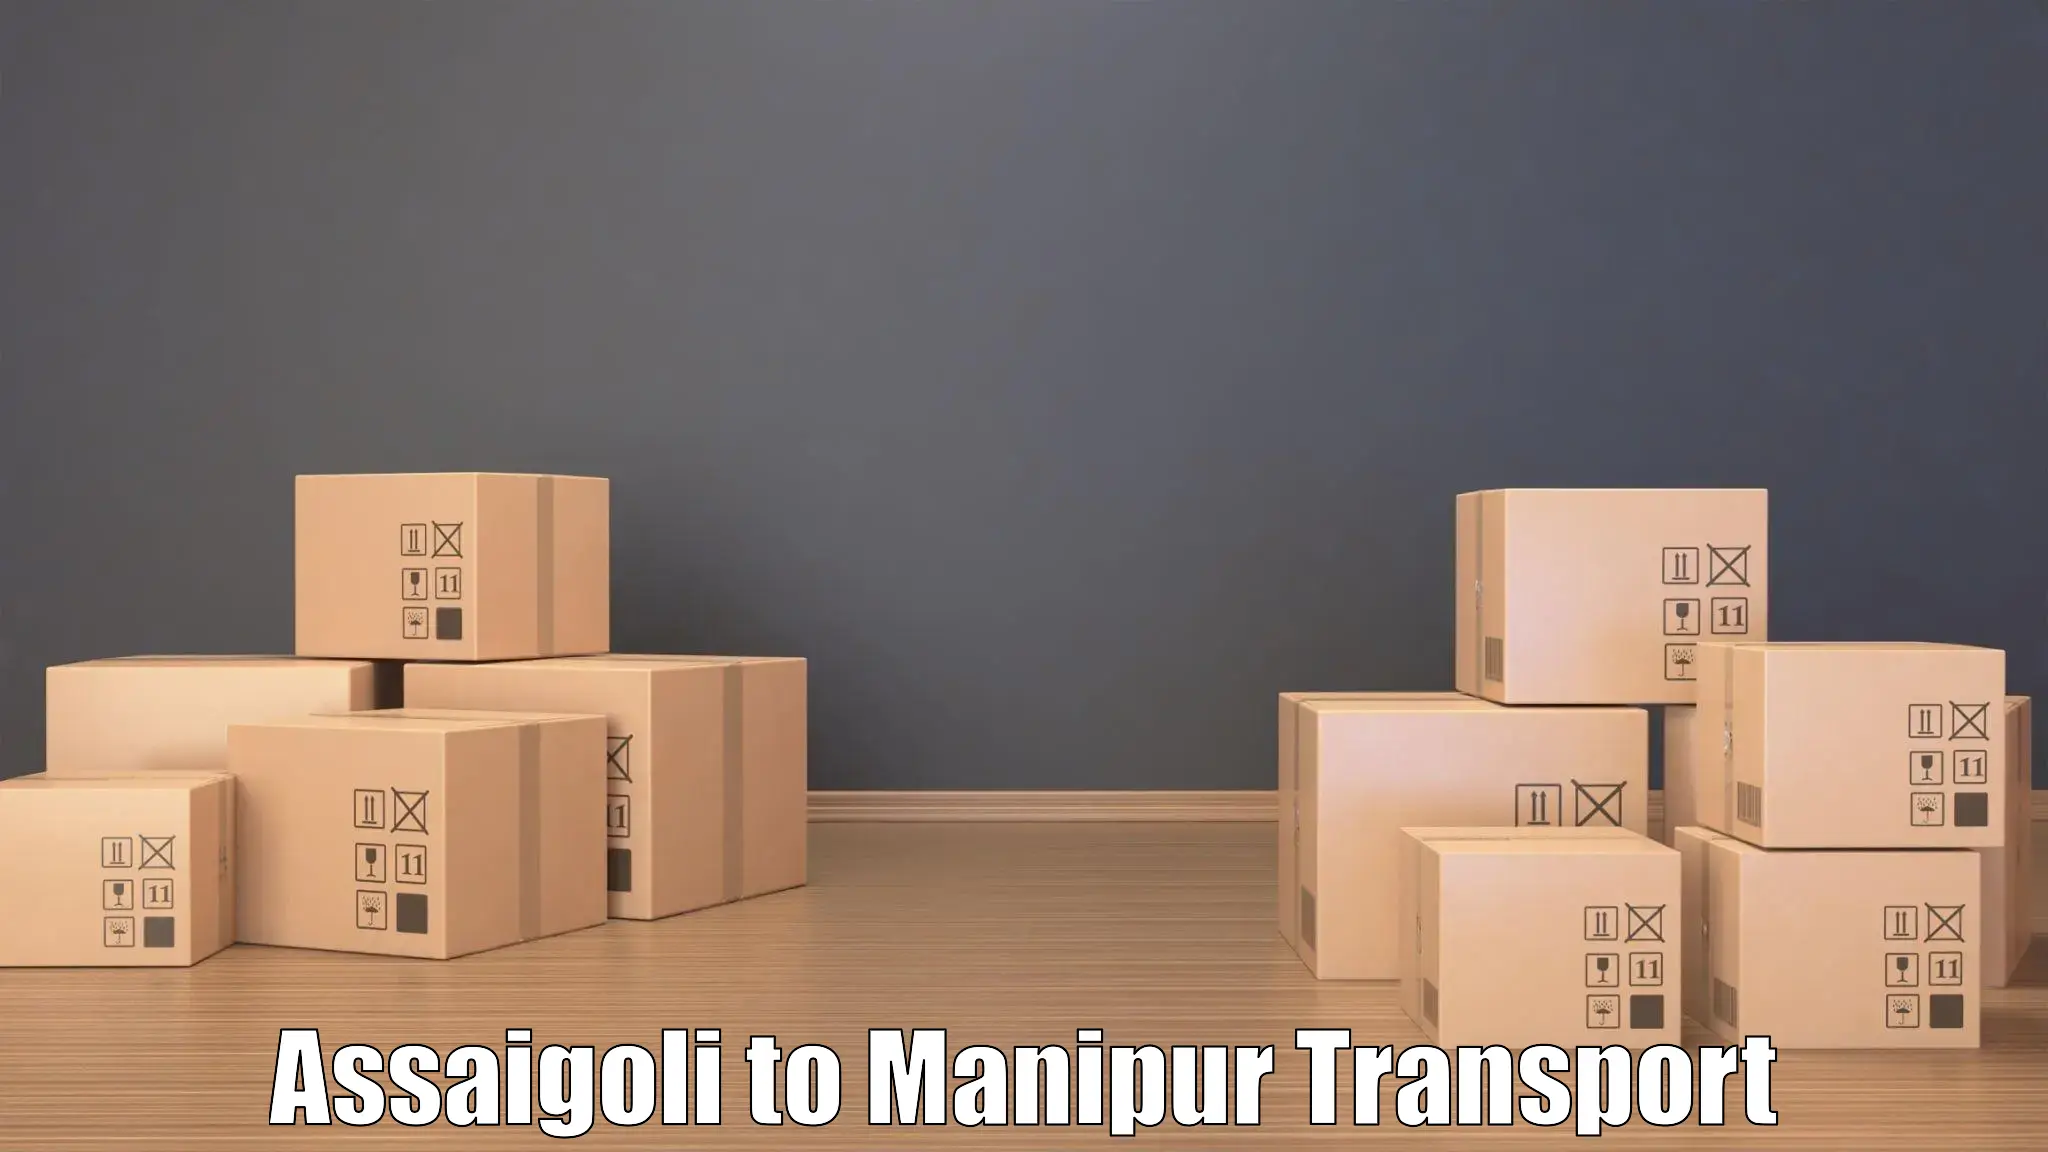 India truck logistics services Assaigoli to Kanti